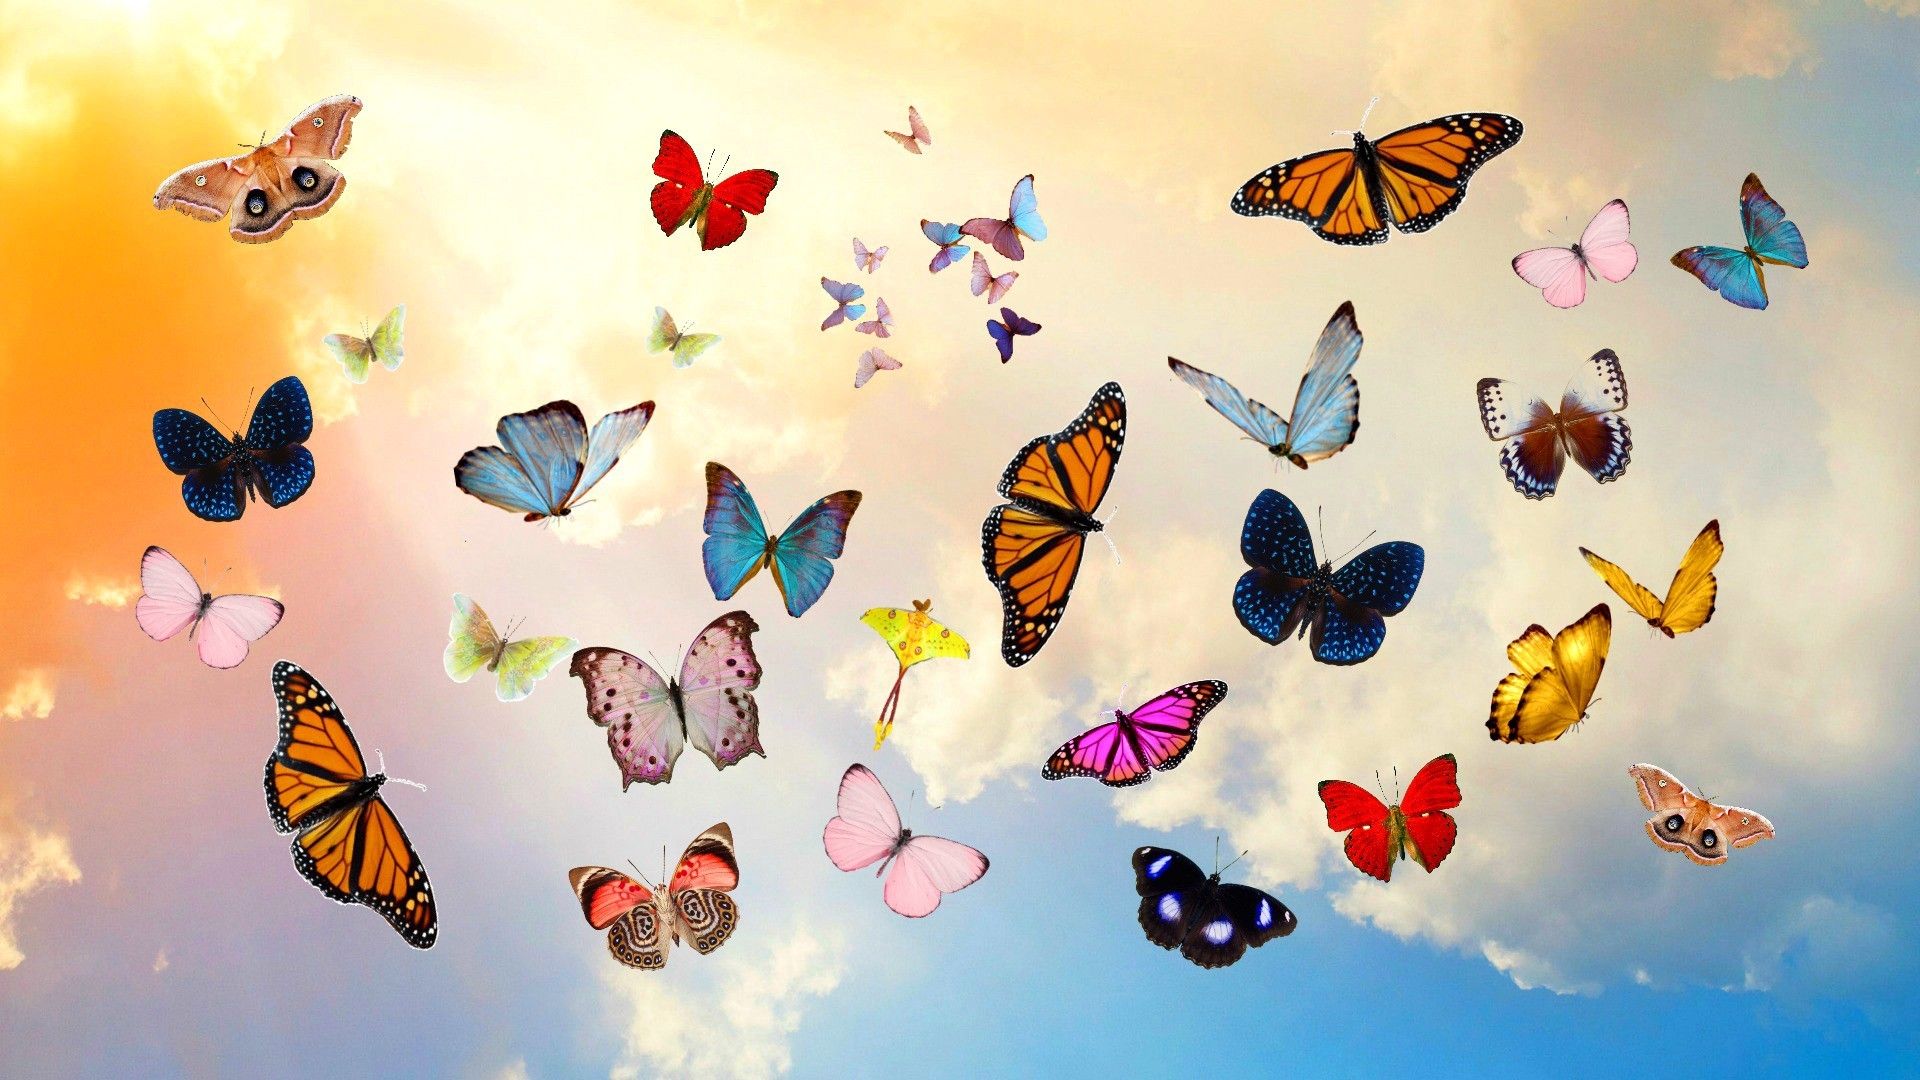 Free download aesthetic Butterflies Butterfly wallpaper Beautiful butterflies [1920x1080] for your Desktop, Mobile & Tablet. Explore Butterfly Desktop Wallpaper. Butterfly Wallpaper, Butterfly Background, Wallpaper Butterfly